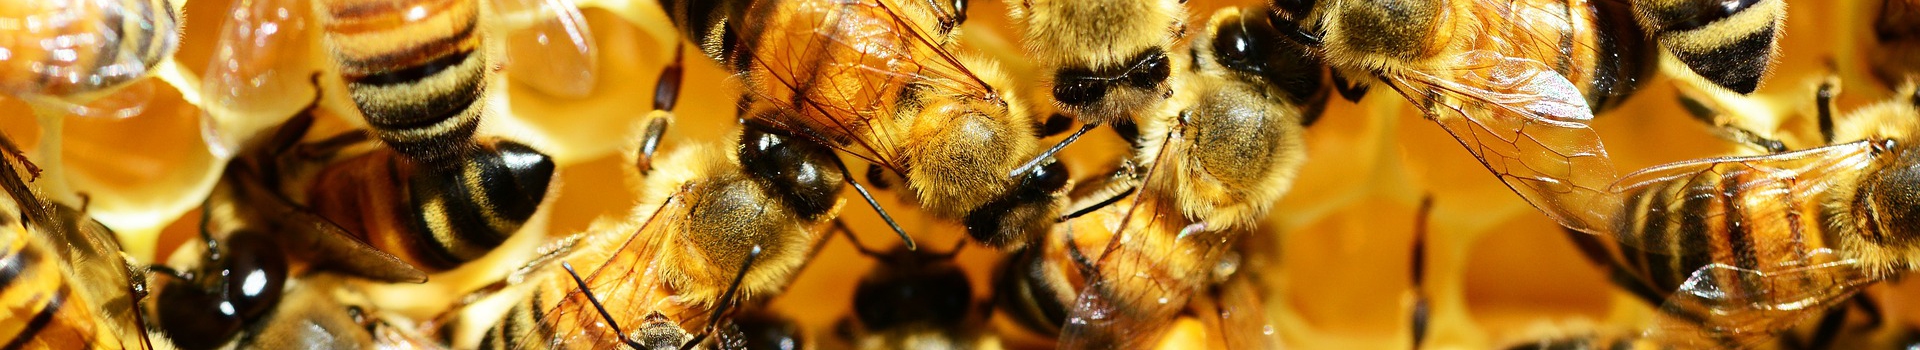 ana arı türleri